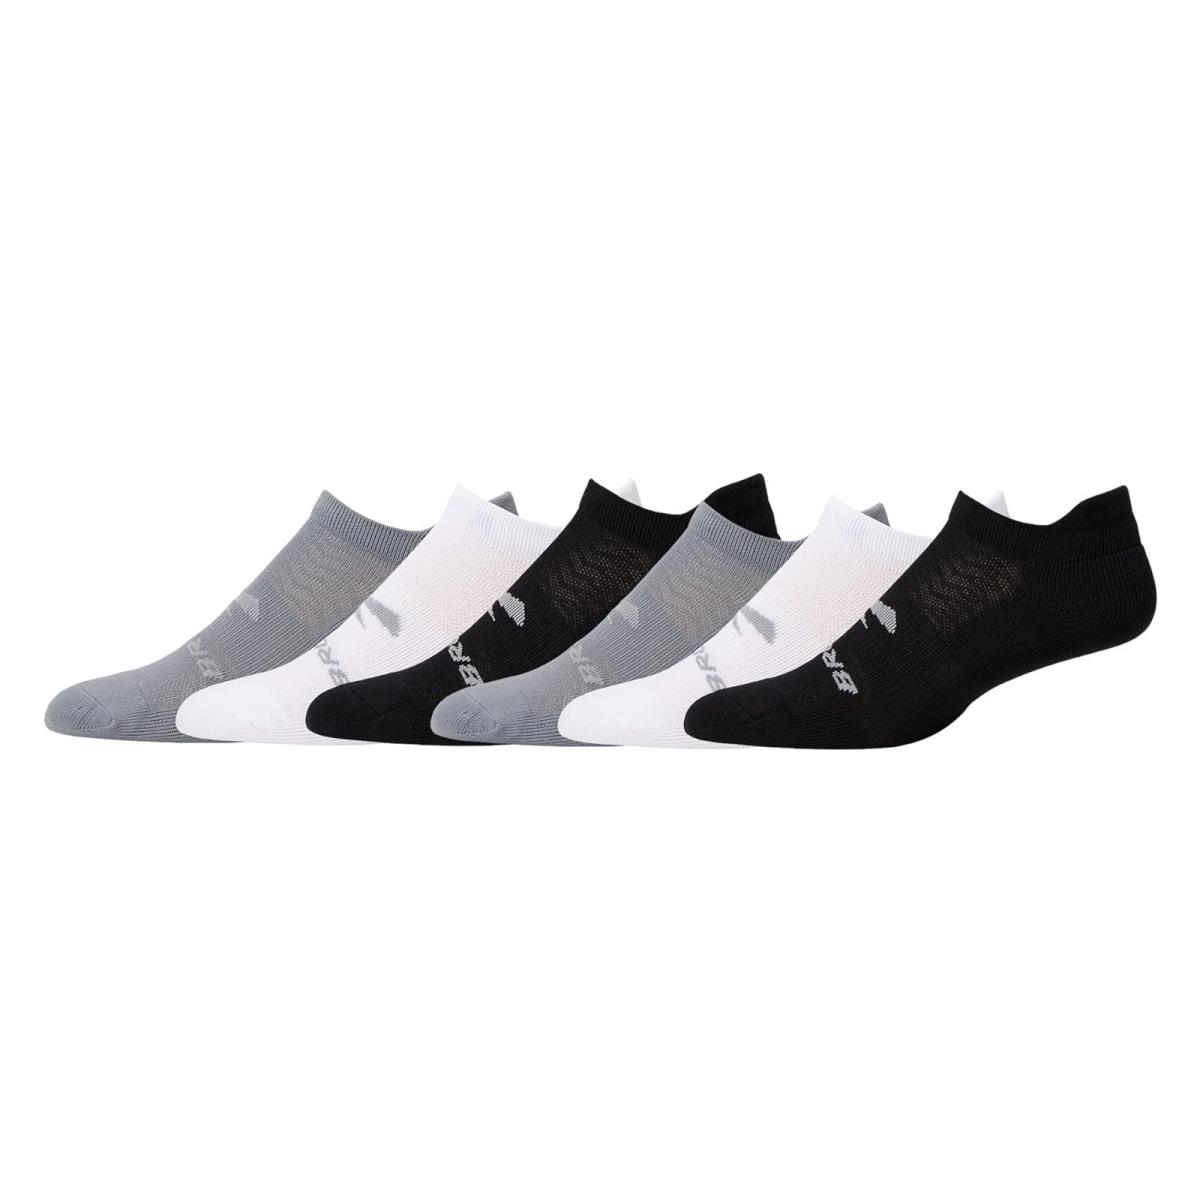 Unisex Socks Brooks Run-in No Show Socks 6-Pack Asphalt/White/Black